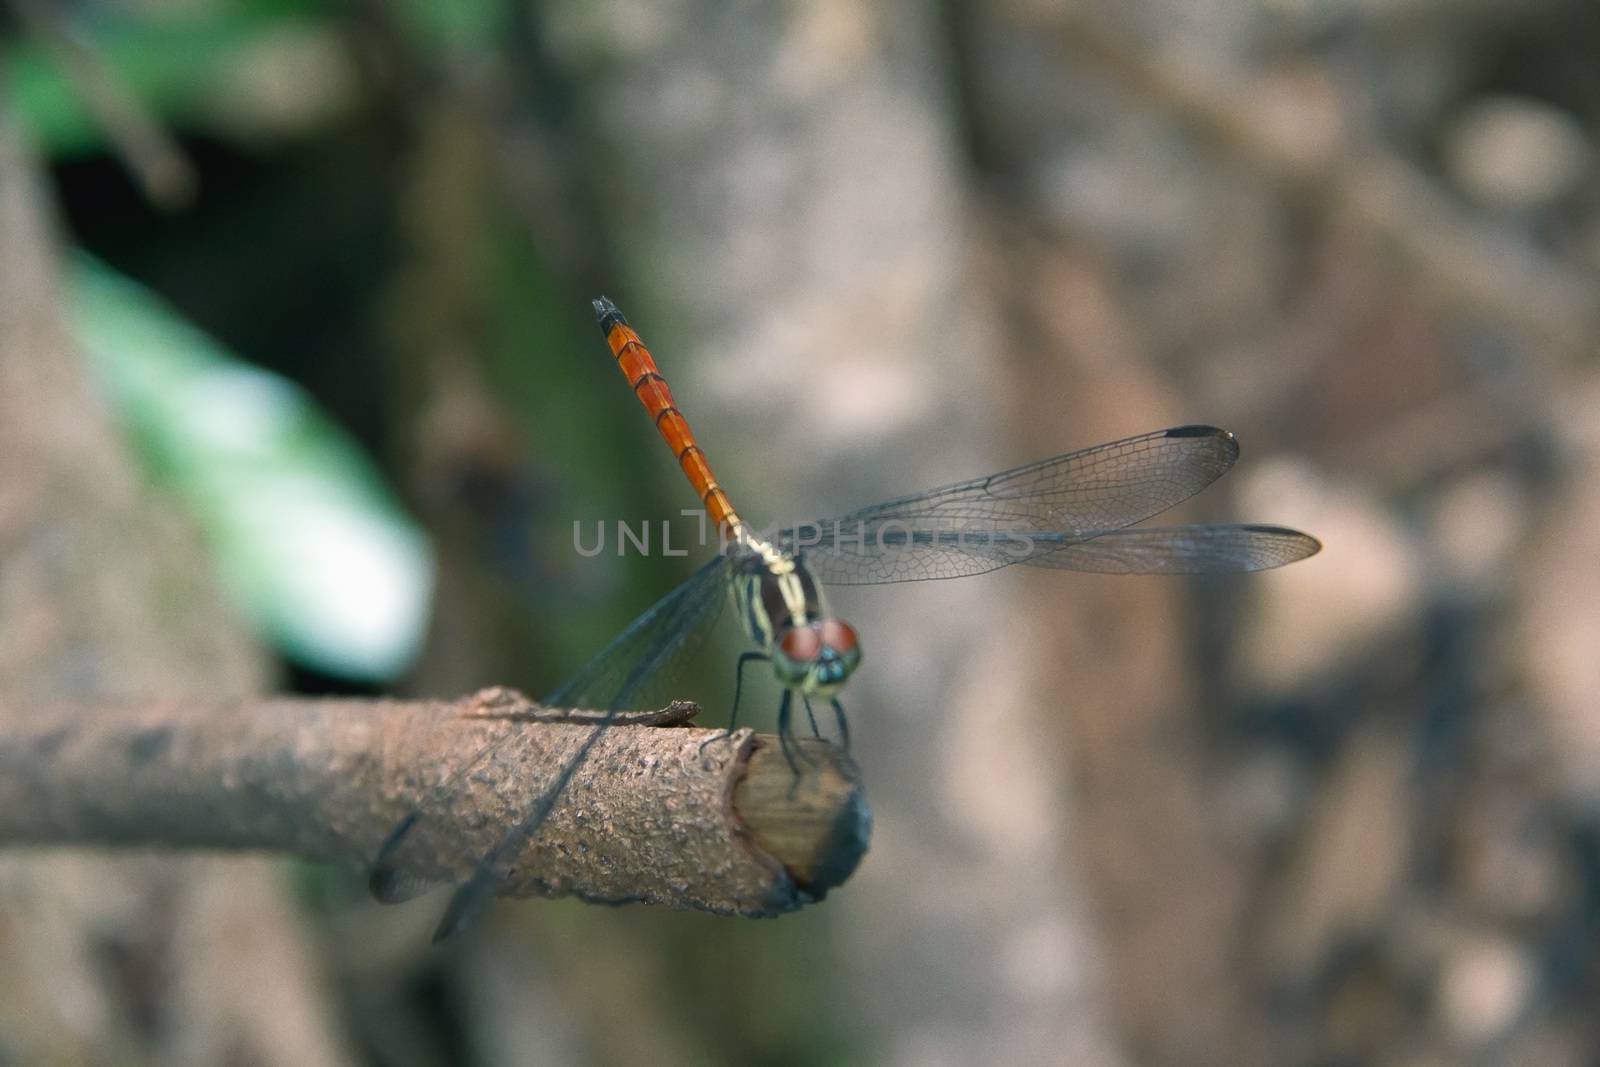 Closeup Dragonfly Island on a branch by STZU